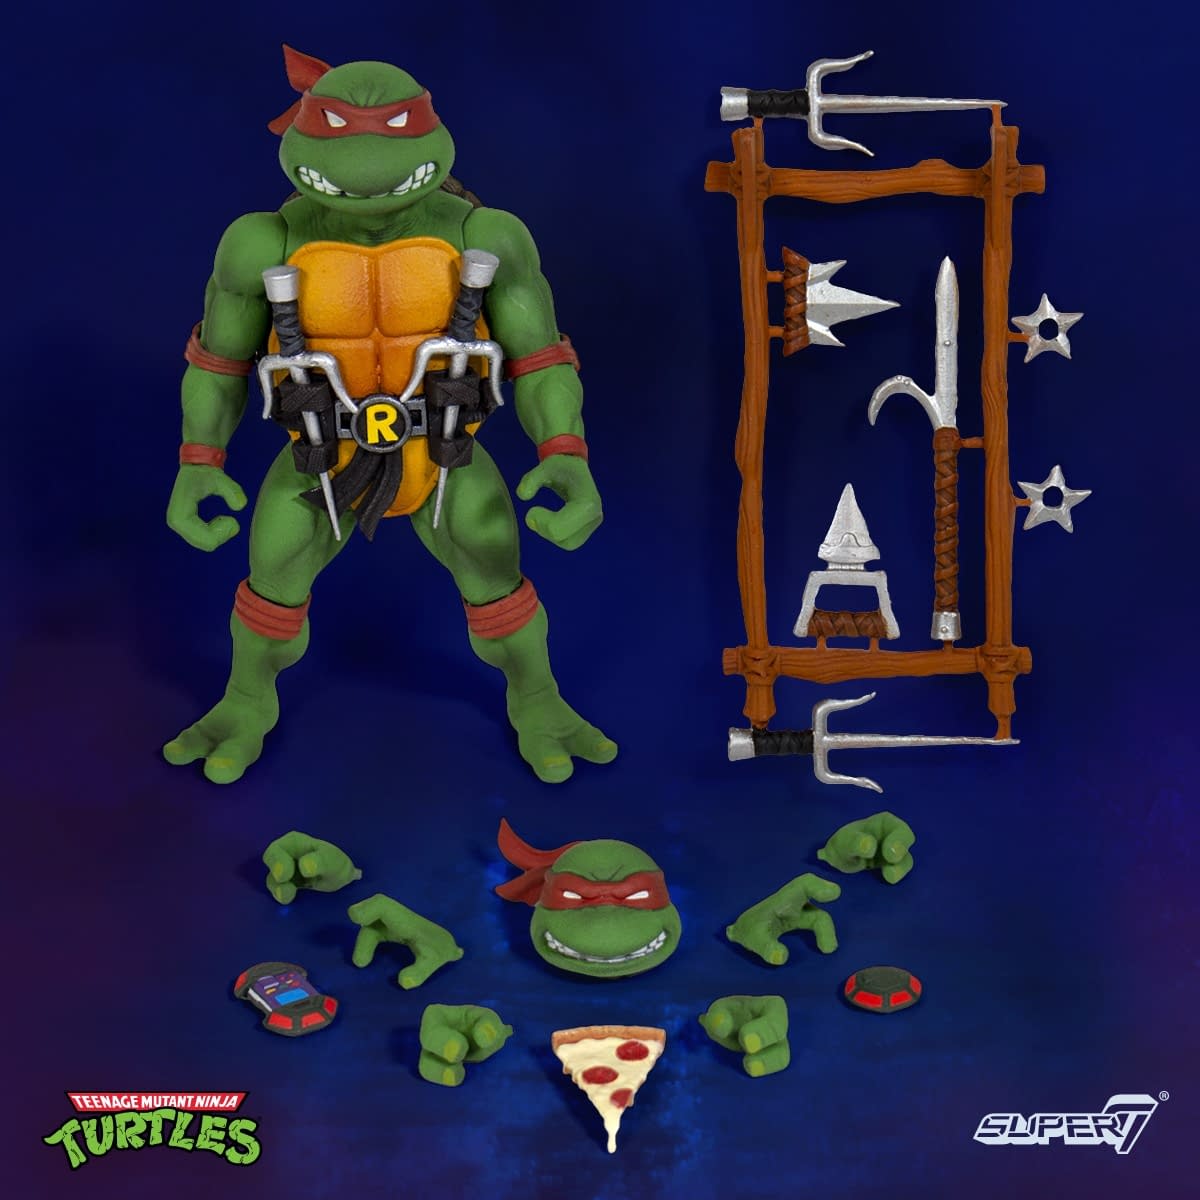 Teenage Mutant Ninja Turtles Super 7 Figures Revealed 